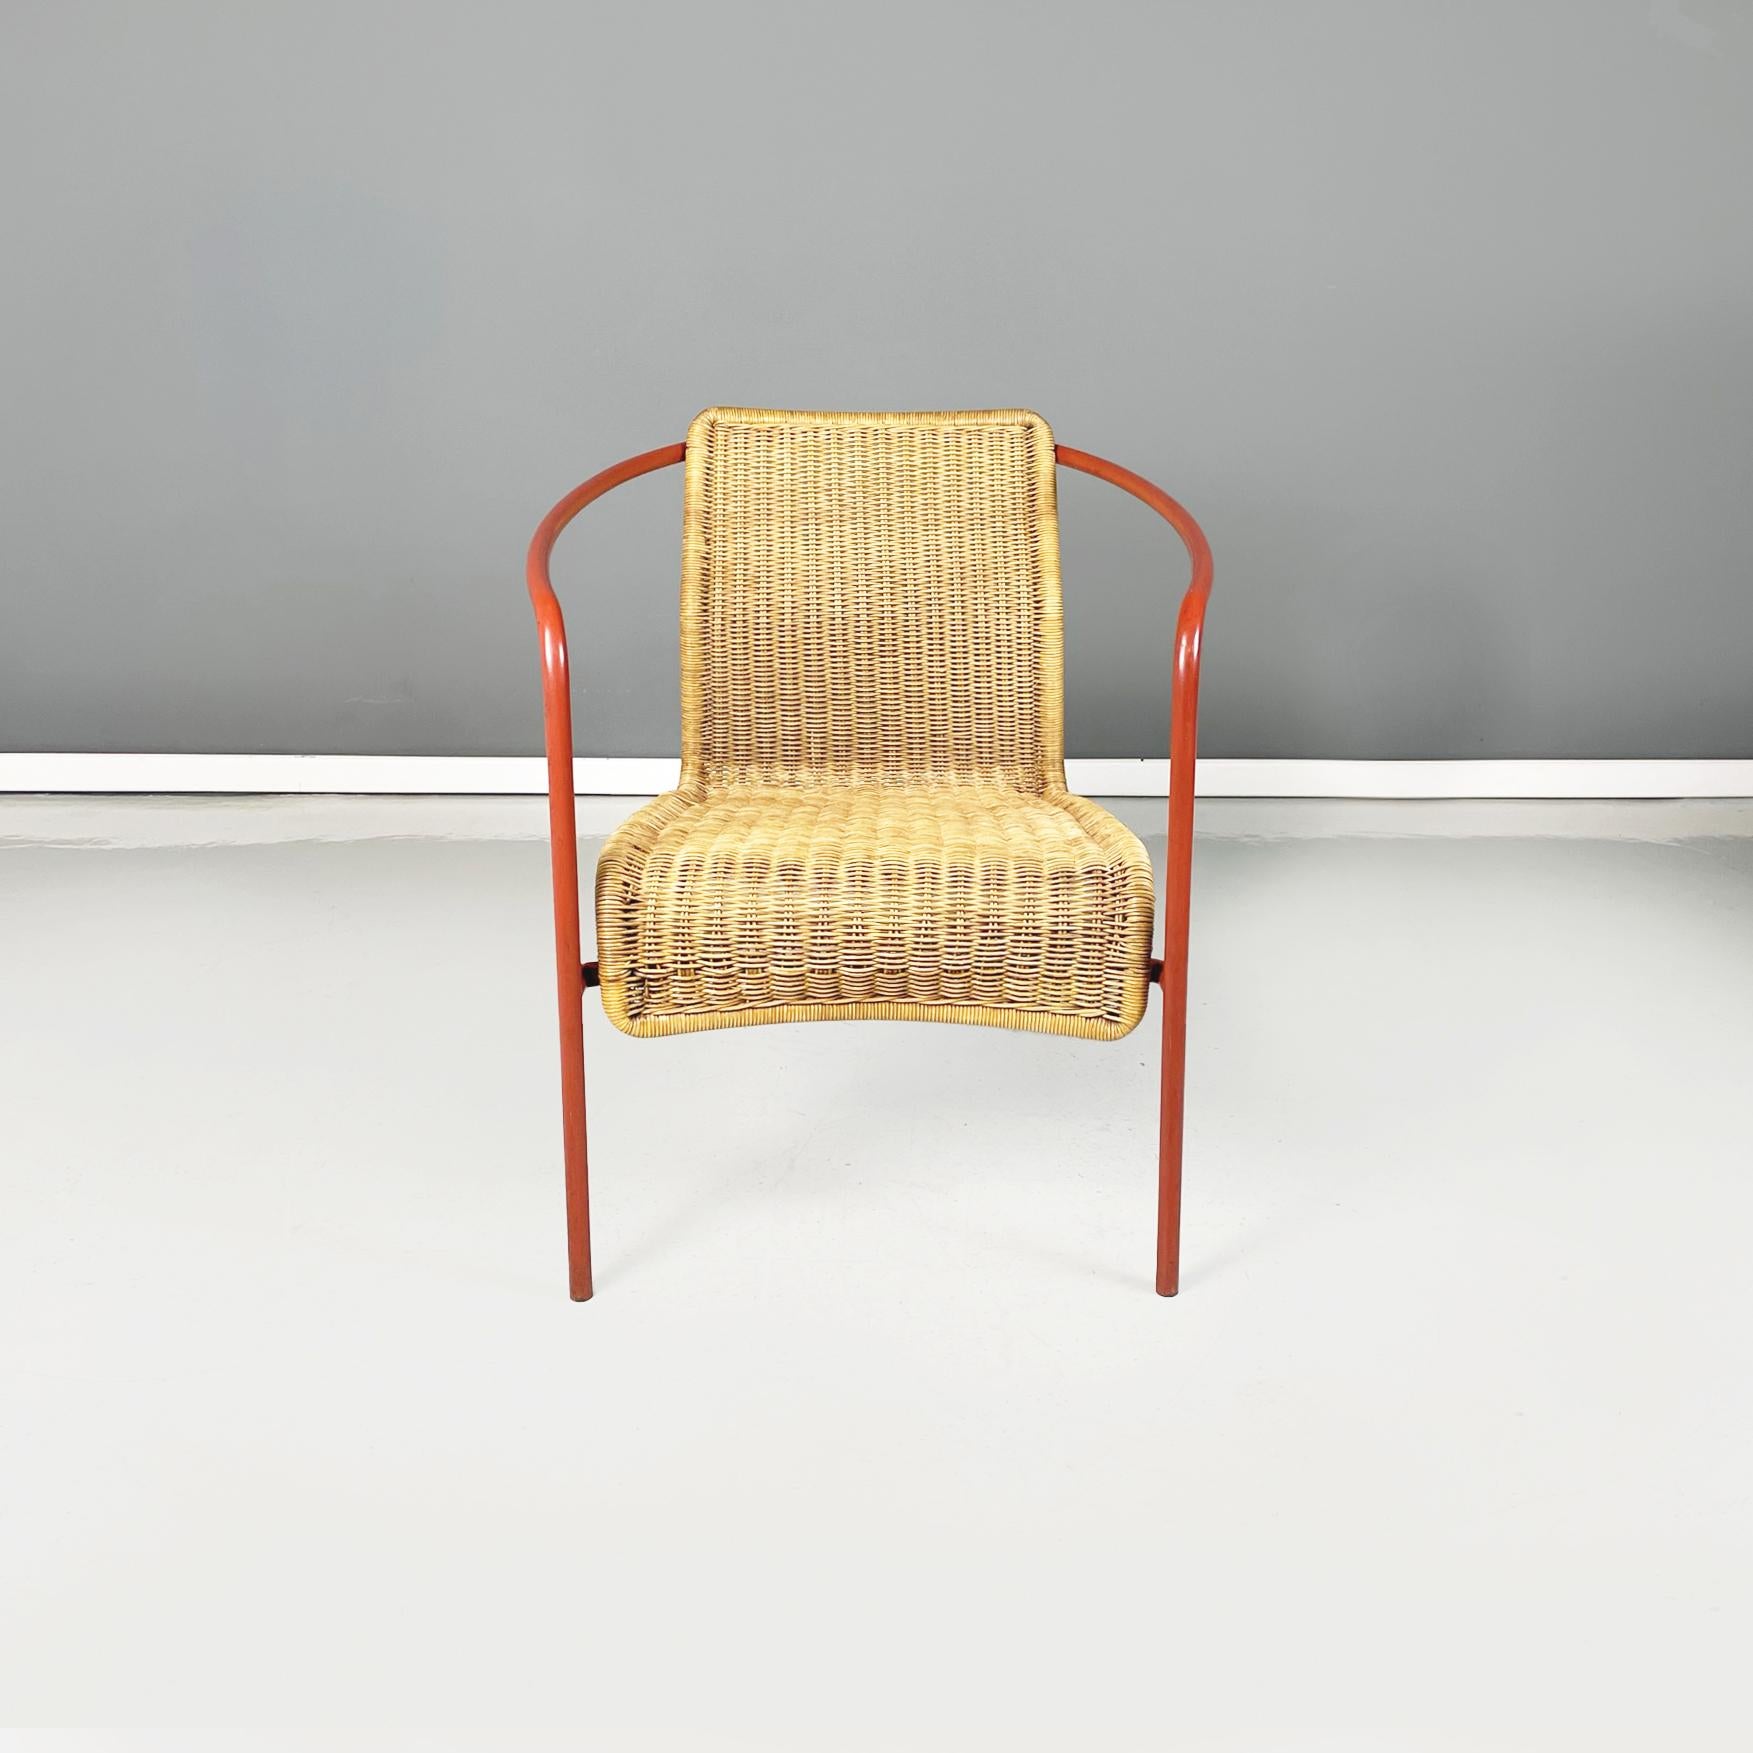 Italienischer moderner halb-ovaler Sessel für den Außenbereich aus Rattan und orangefarbenem Metallrohr, 1980er Jahre
Halbovaler Sessel aus Rattan und Metall. Die Rückenlehne und der lange Sitz sind aus geflochtenem Rattan. Die Struktur besteht aus